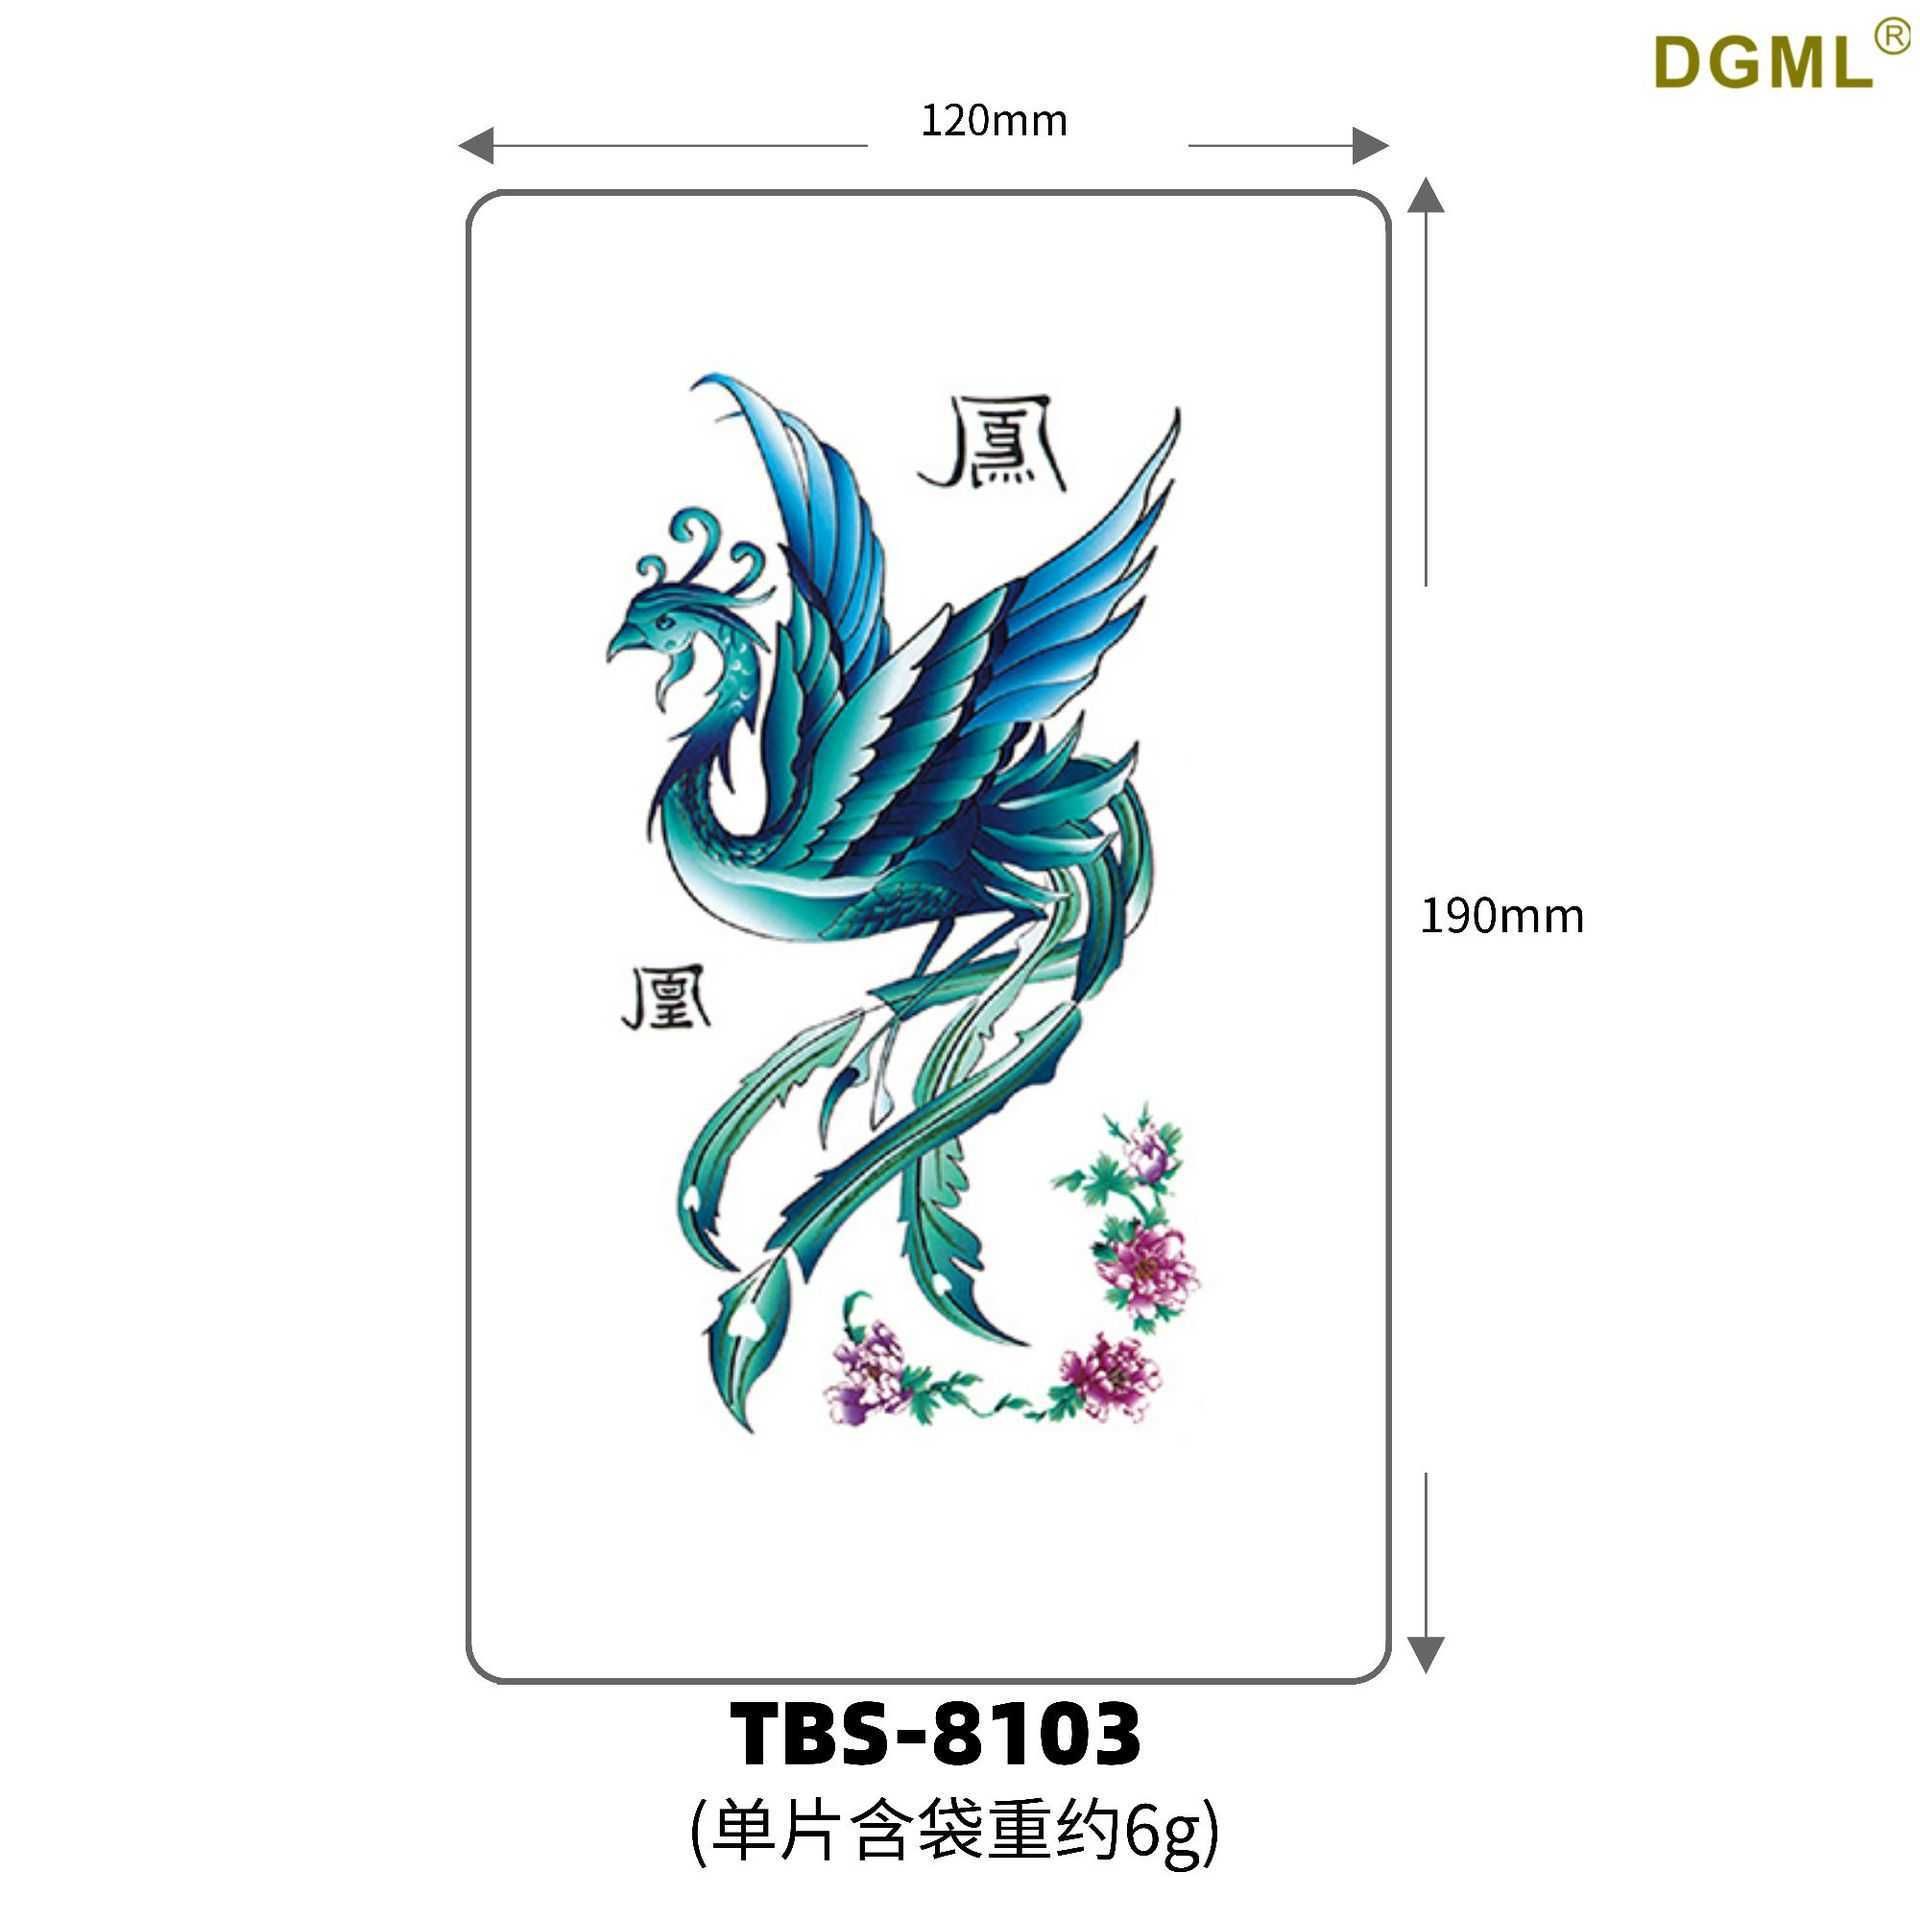 Tbs-8103-19x21cm